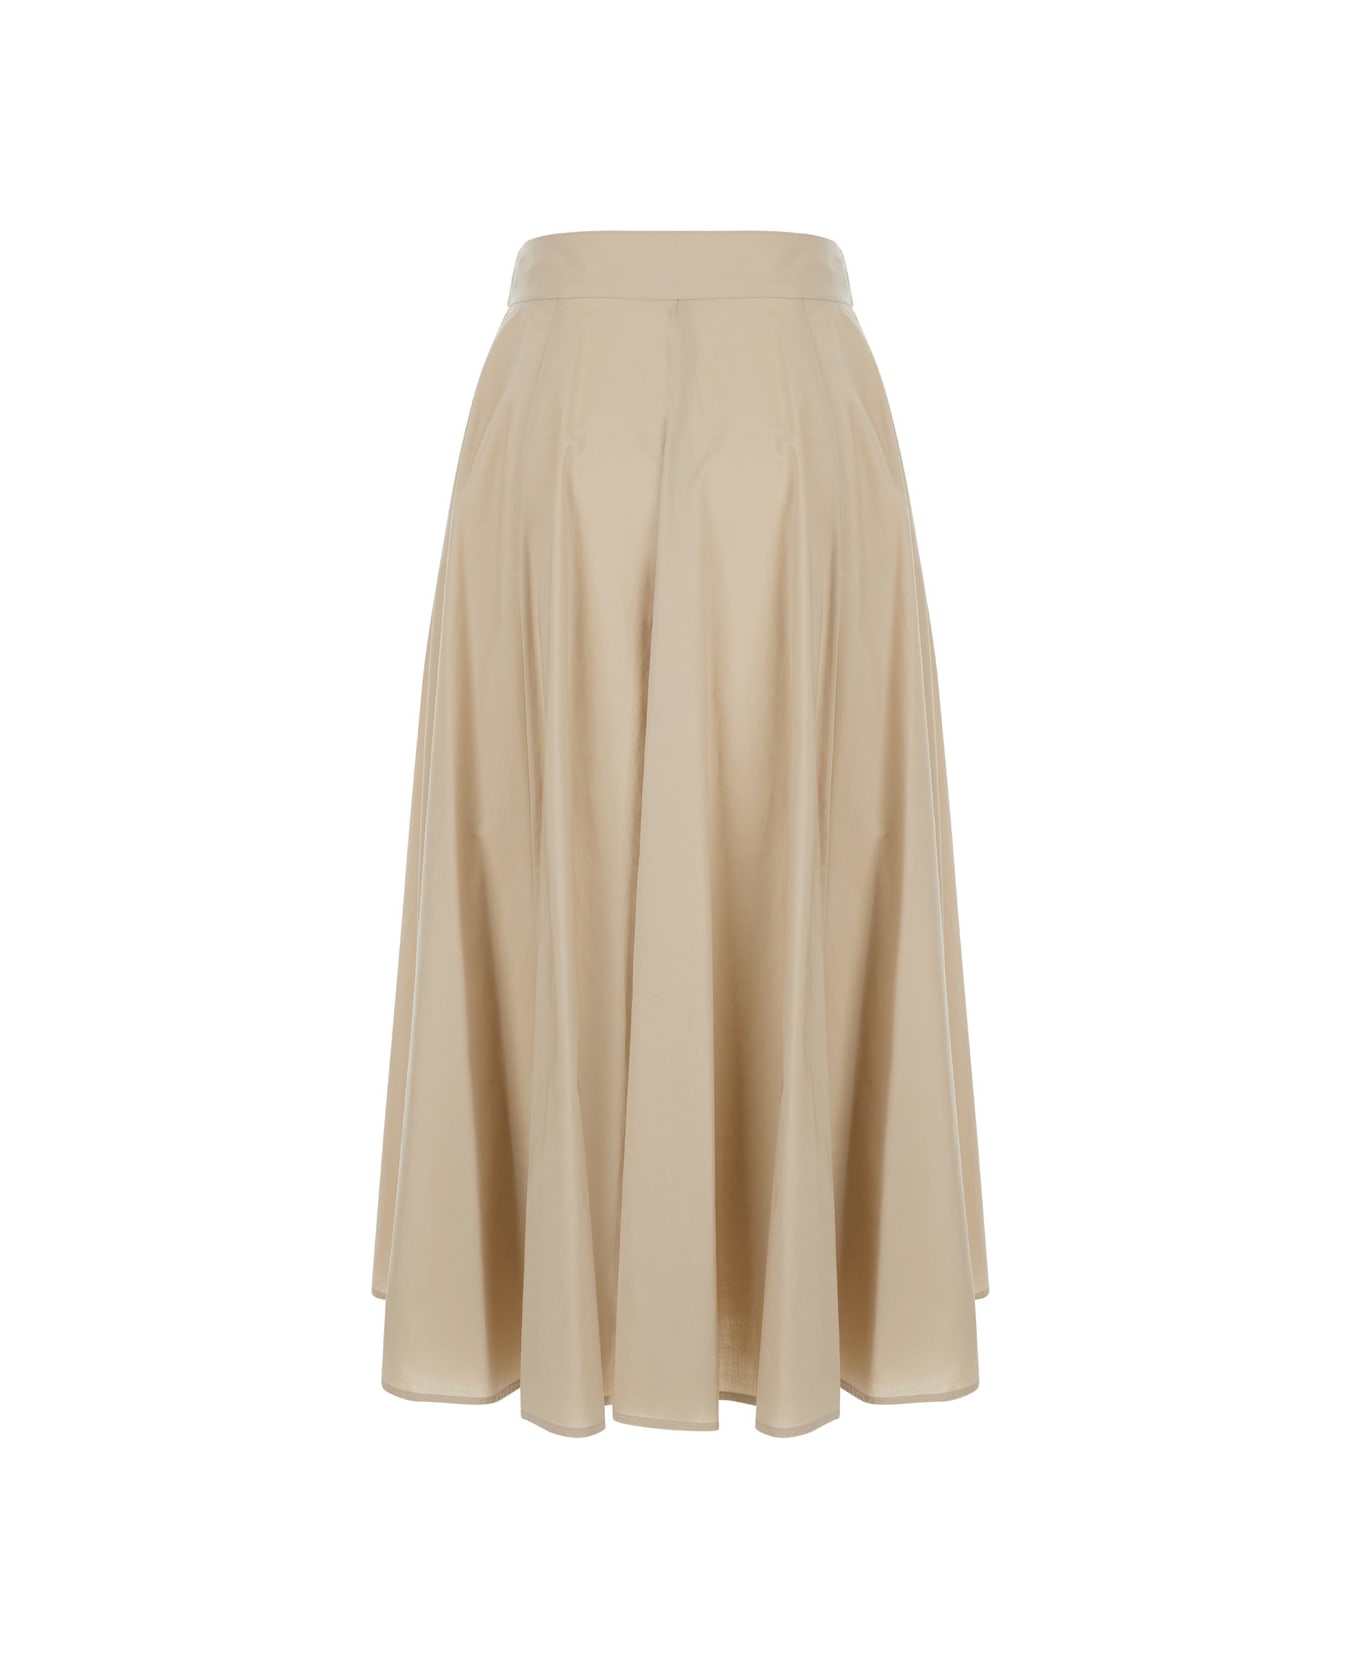 Liu-Jo Beige Long Pleated Skirt In Cotton Woman - Beige